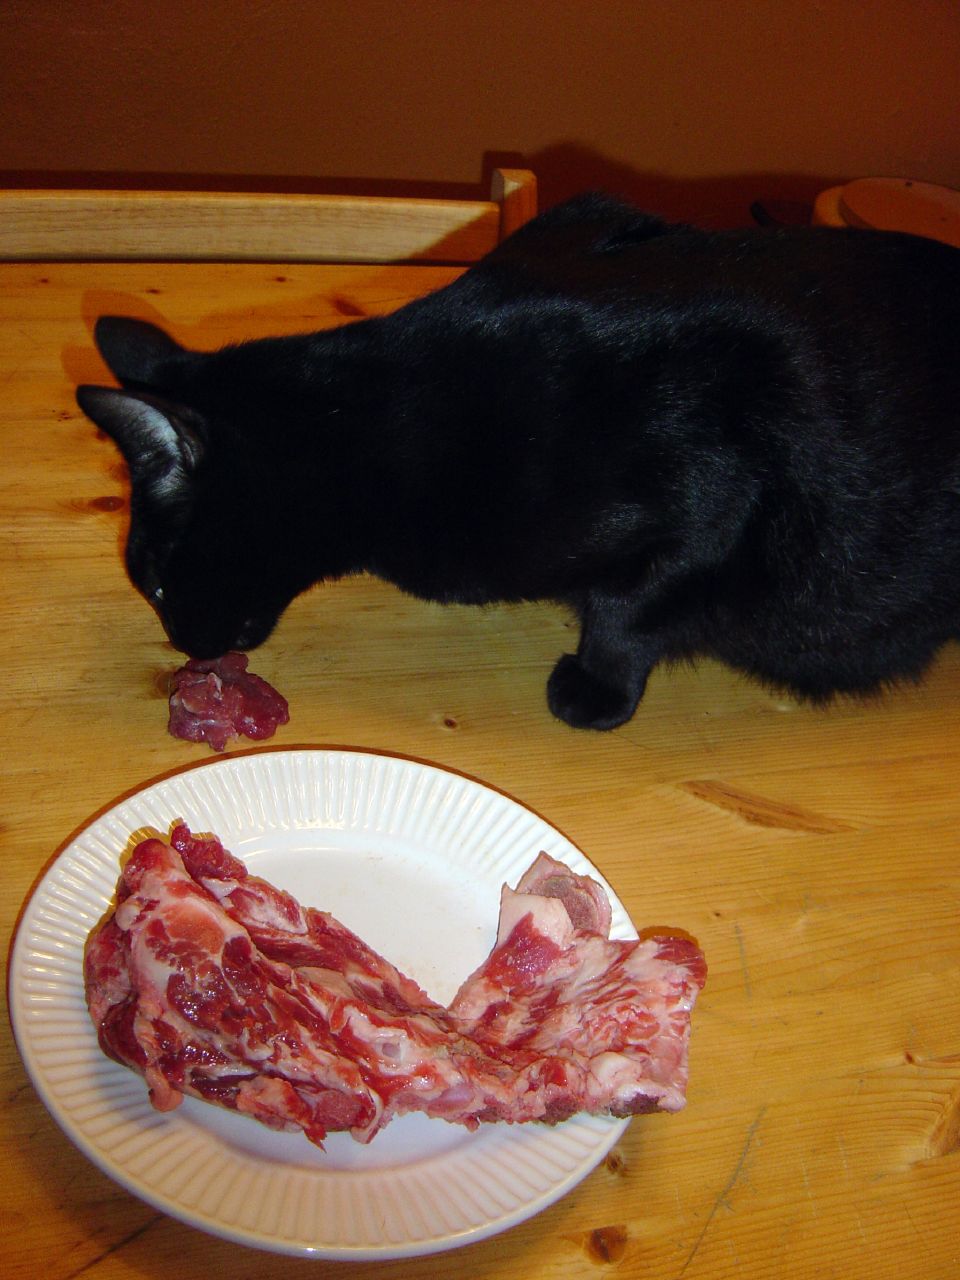 Auf dem Bild ist eine Katze beim fressen zu sehen